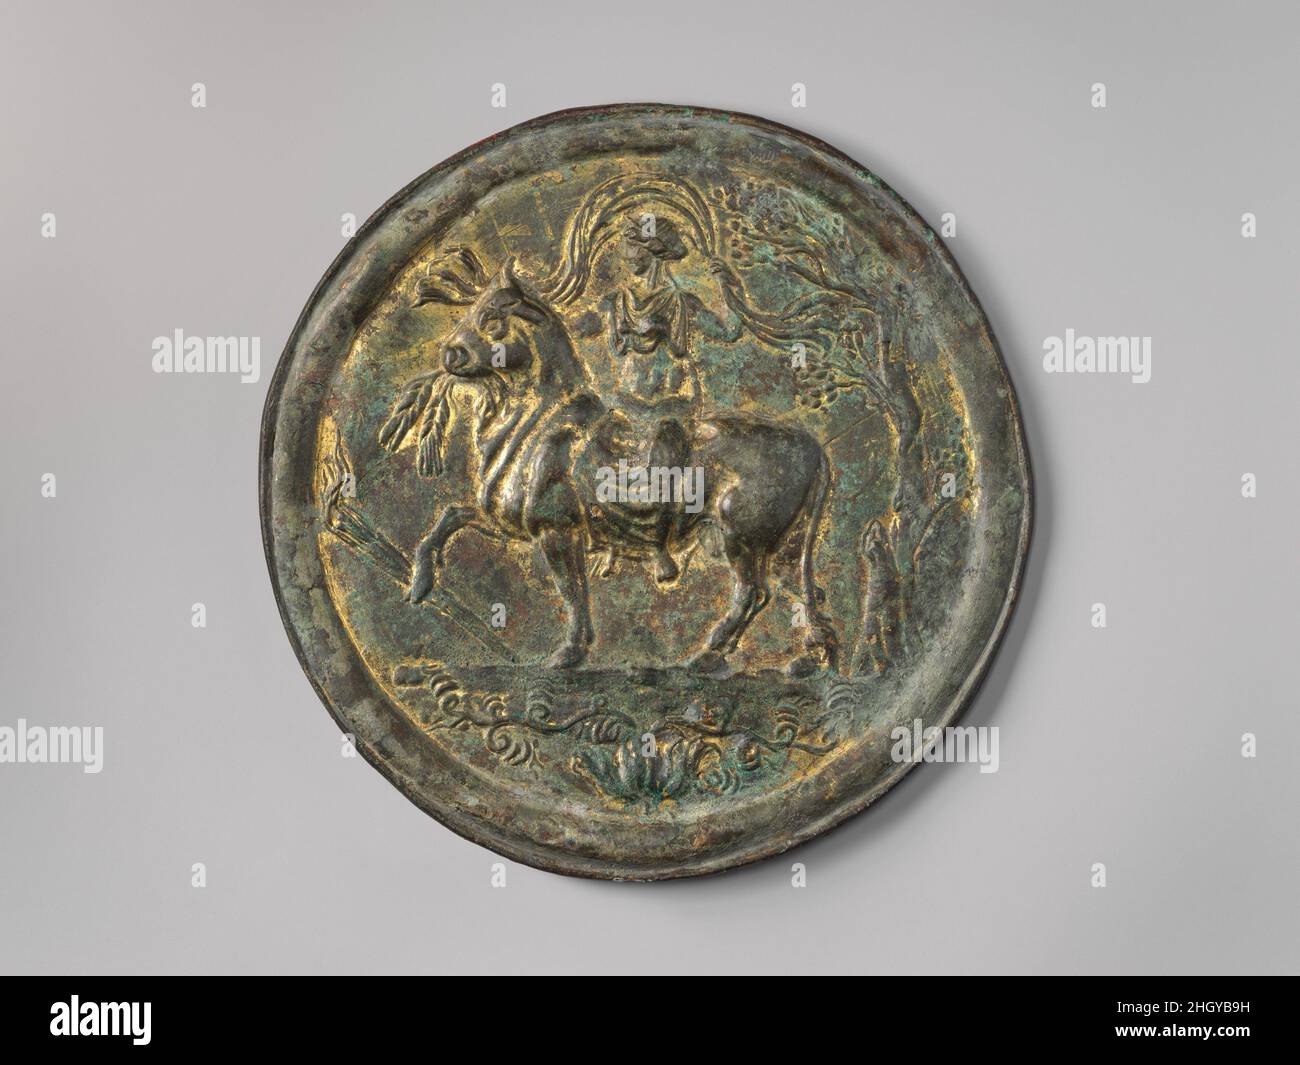 Miroir en bronze avec des traces de dorure mi-2nd siècle A.D. Roman le  miroir est décoré d'une scène de la mythologie grecque - Europa et le Bull  (qui représente Zeus/Jupiter dans le